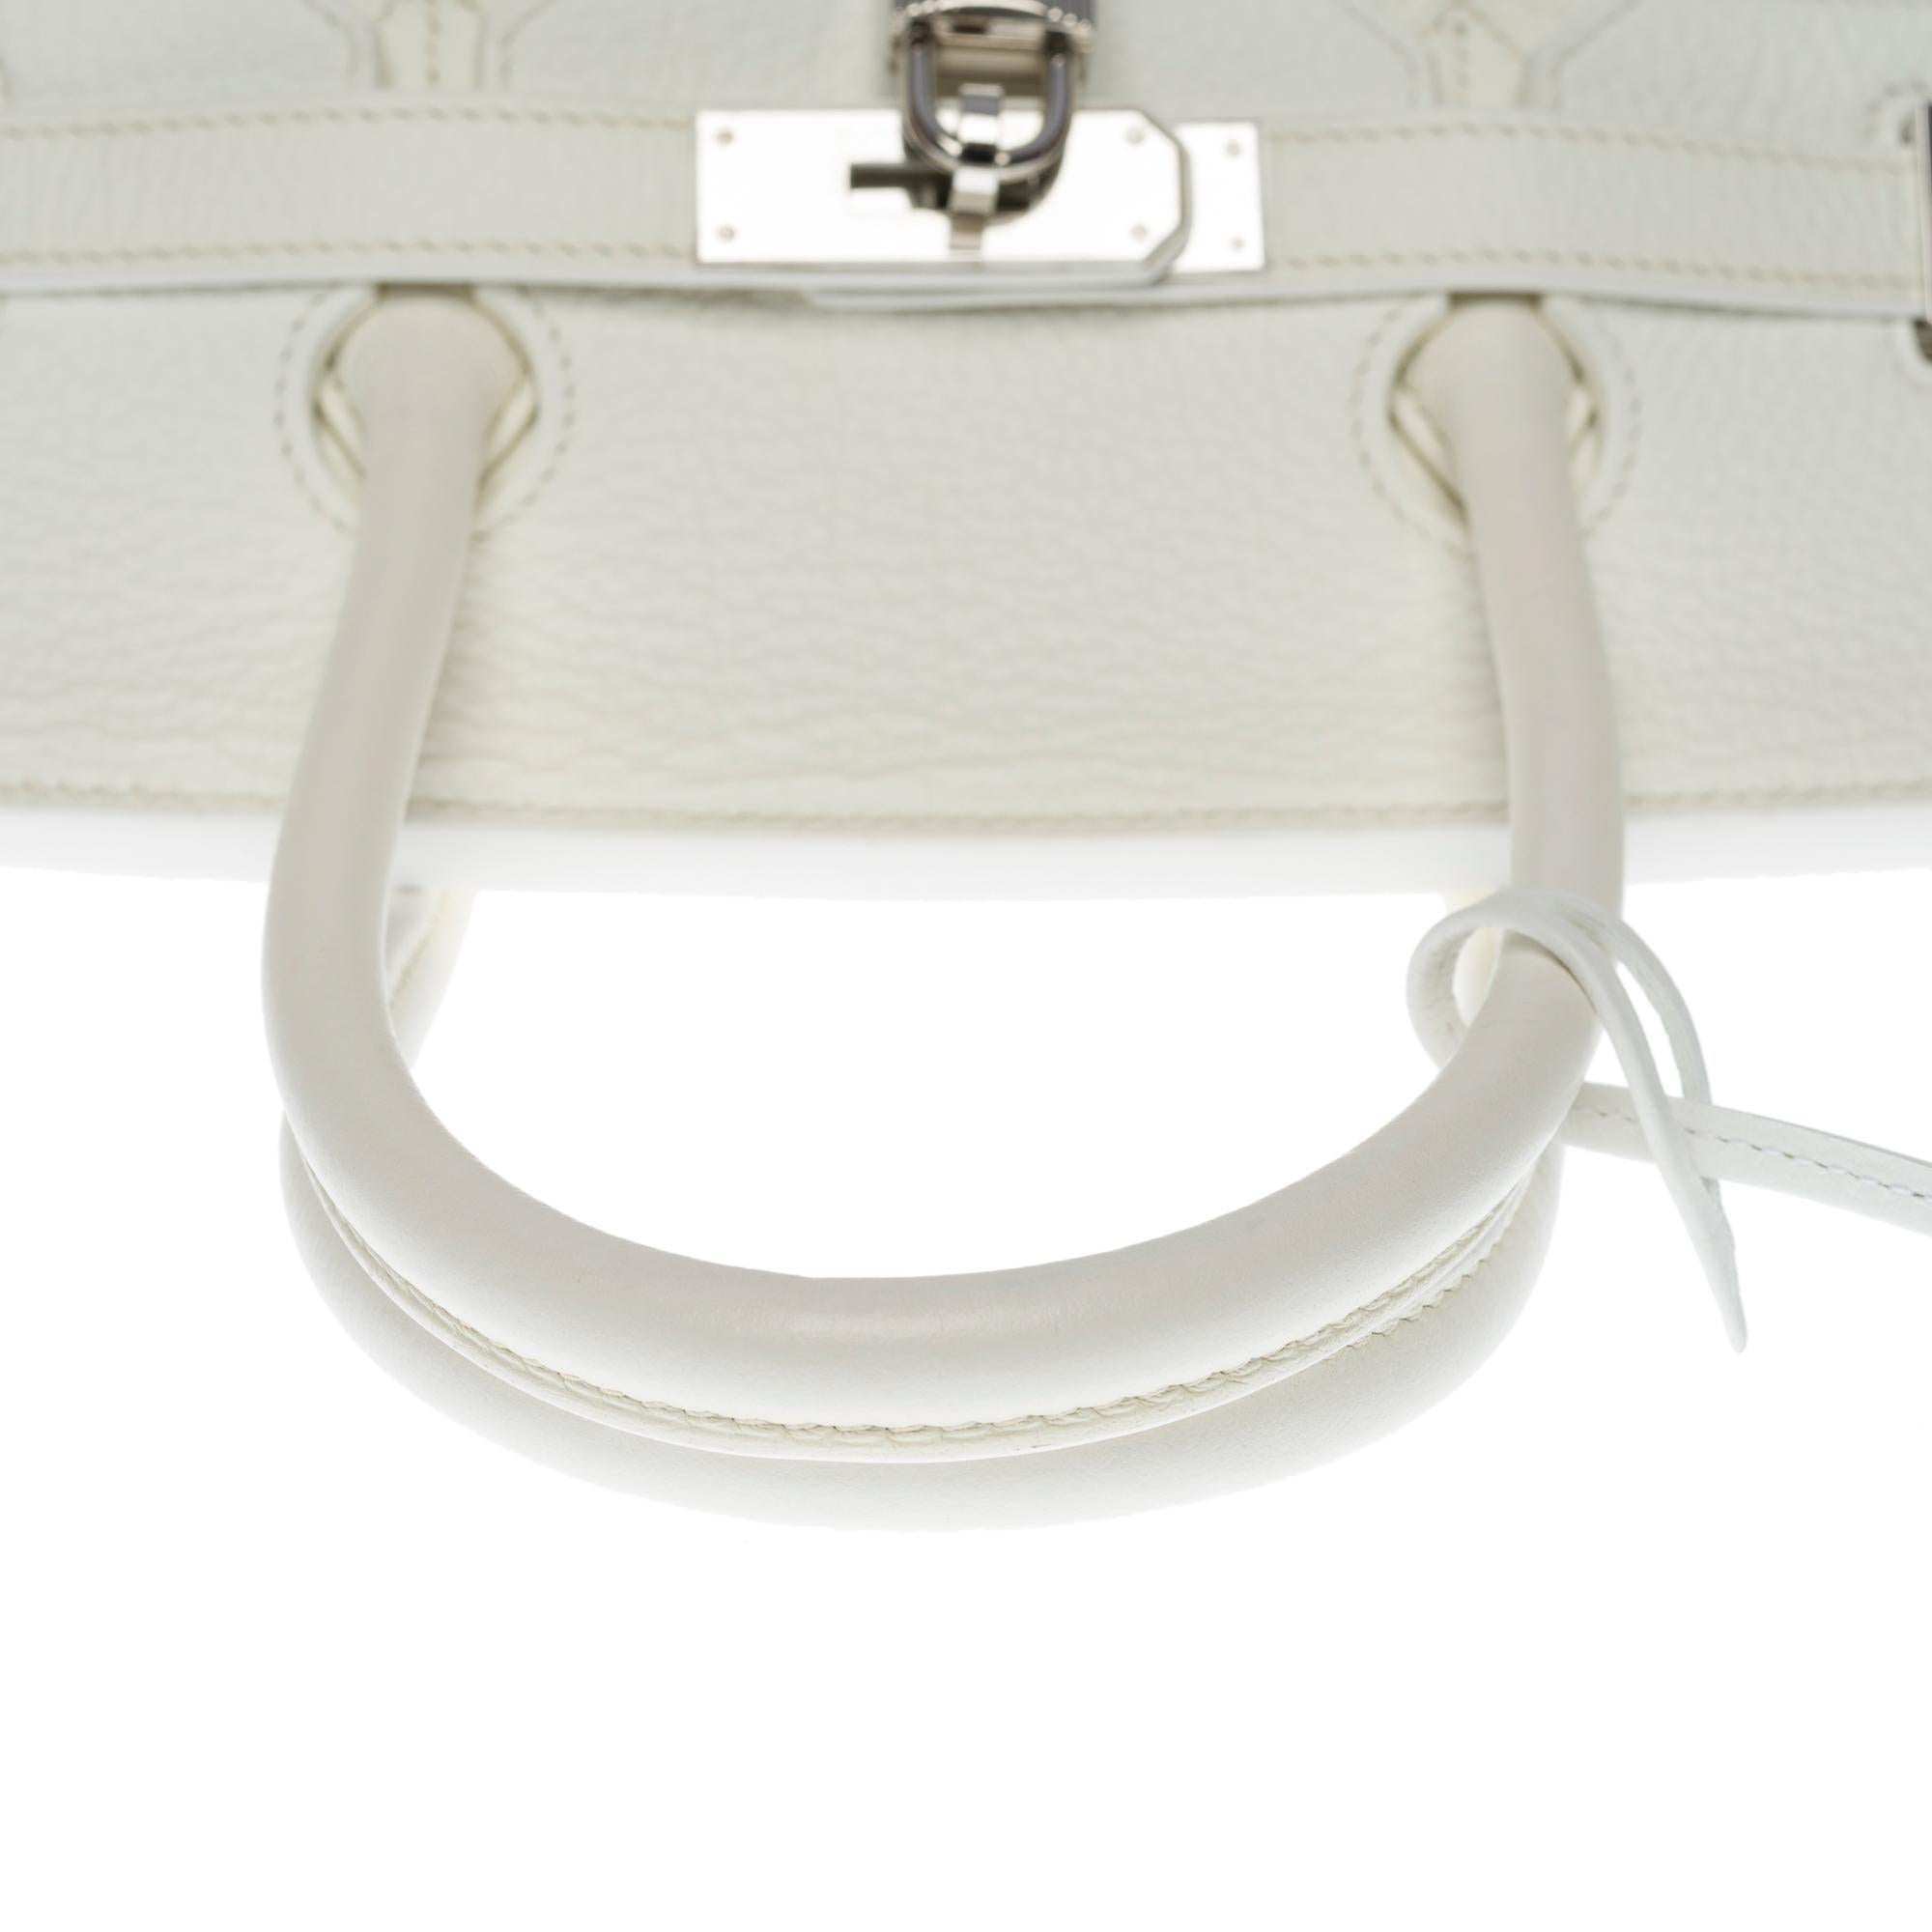 Stunning Hermès Birkin 35 handbag in white Togo leather, SHW 5